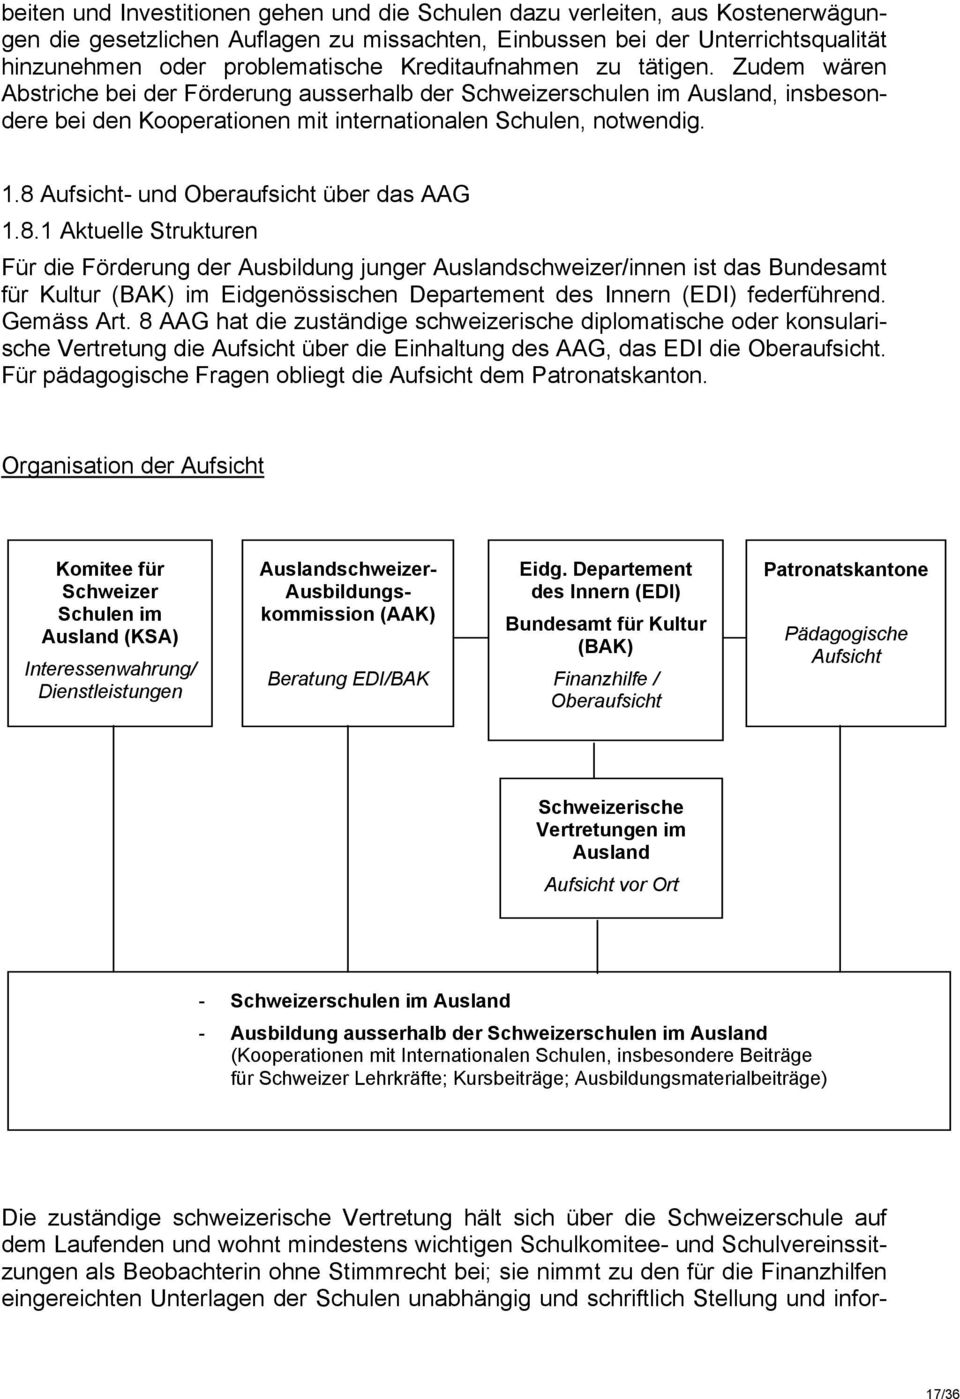 8 Aufsicht- und Oberaufsicht über das AAG 1.8.1 Aktuelle Strukturen Für die Förderung der Ausbildung junger Auslandschweizer/innen ist das Bundesamt für Kultur (BAK) im Eidgenössischen Departement des Innern (EDI) federführend.